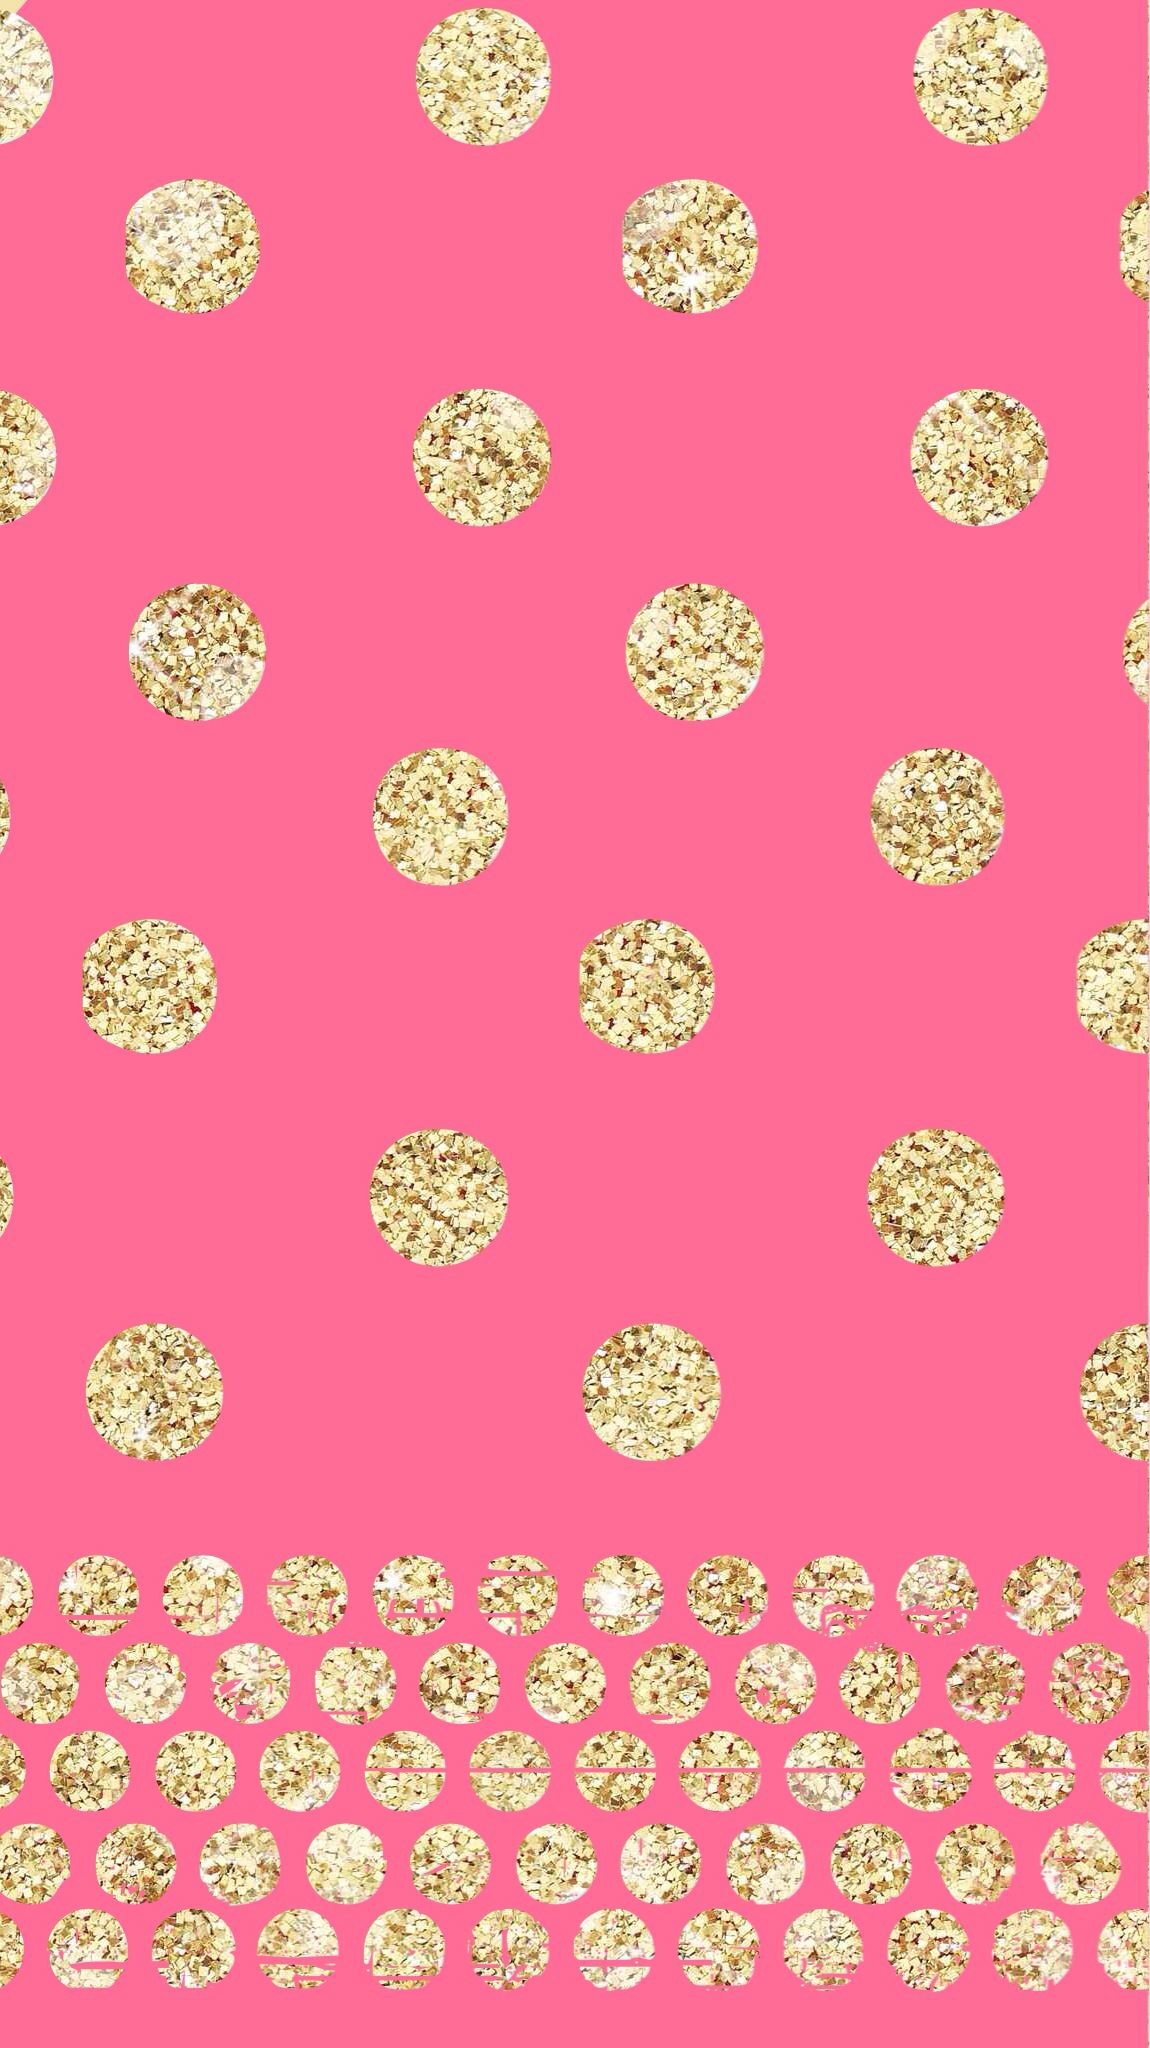 1150x2048 Pink and gold polka dot wallpaper